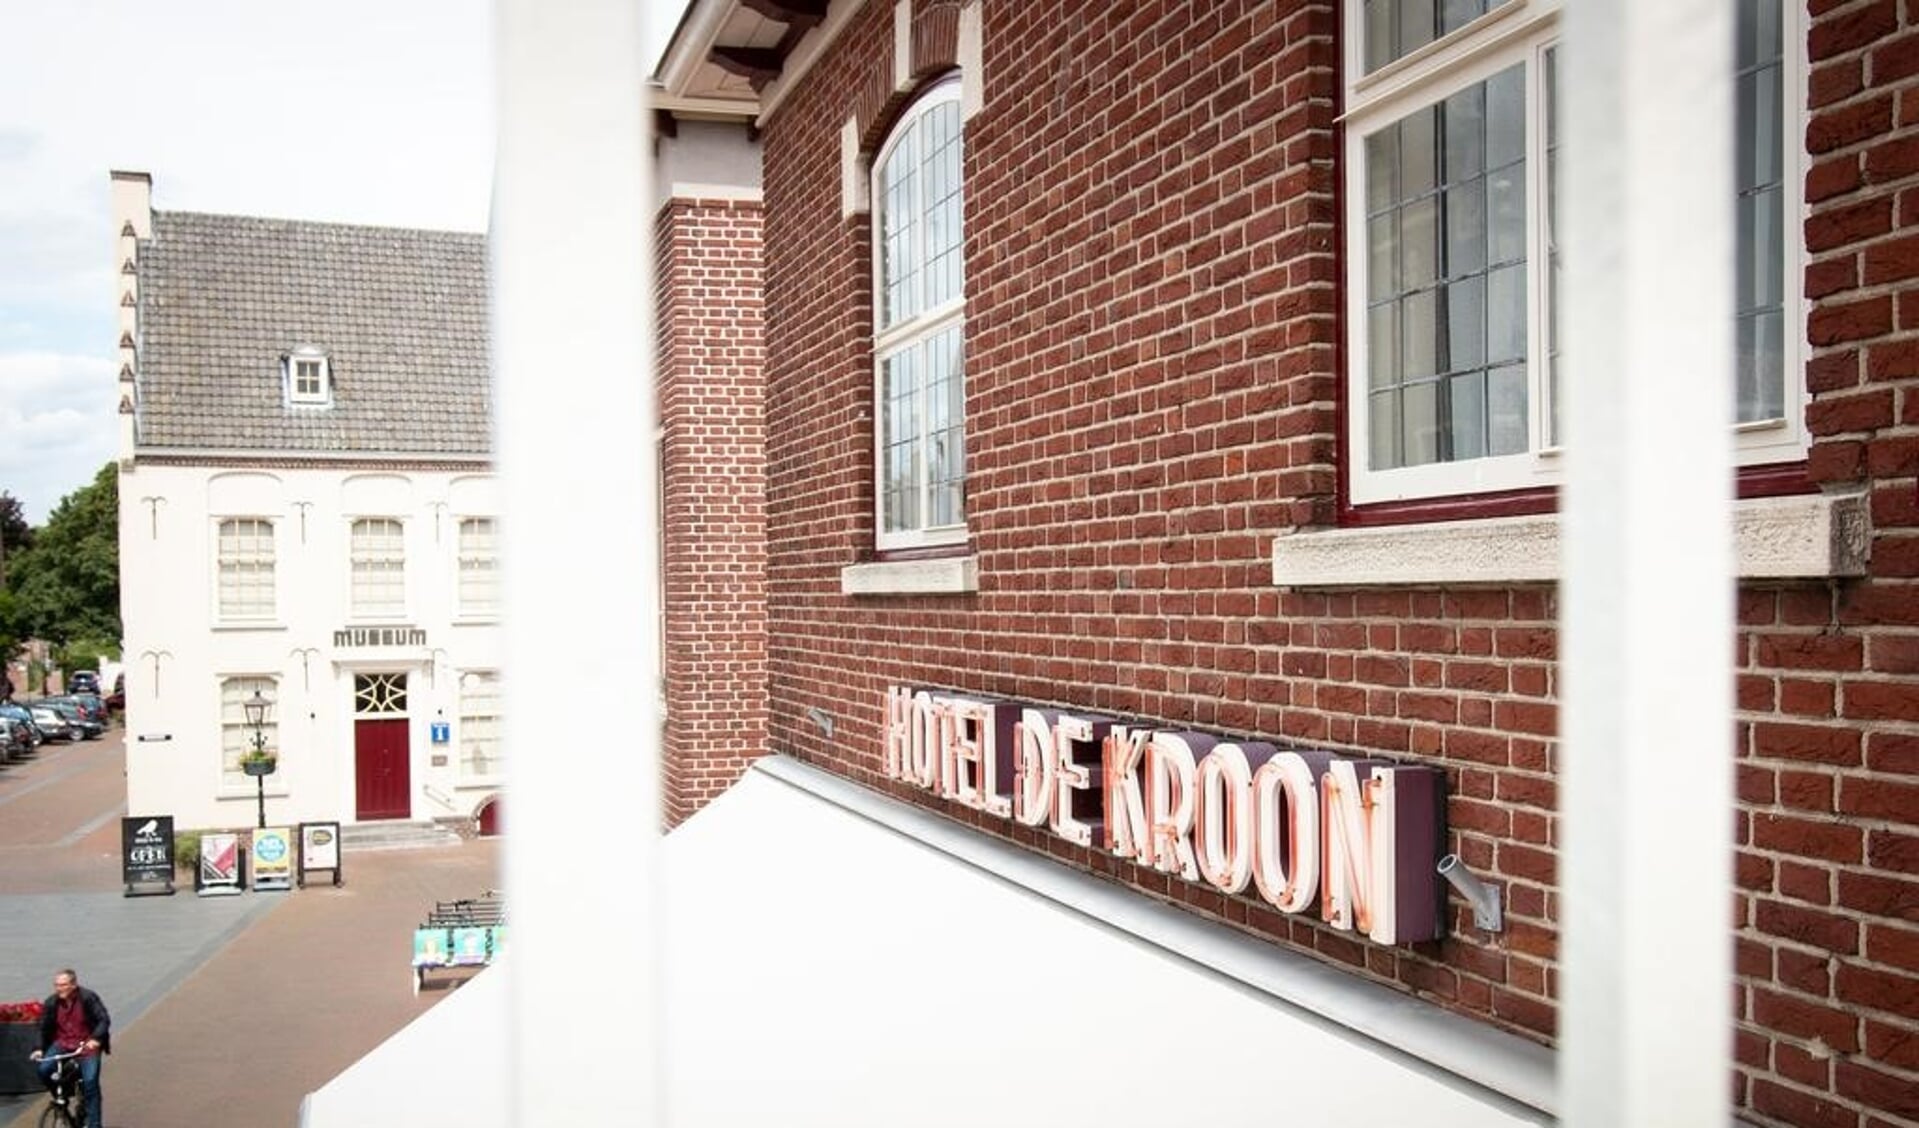 Hotel De Kroon biedt gratis kamers aan voor het zorgpersoneel.